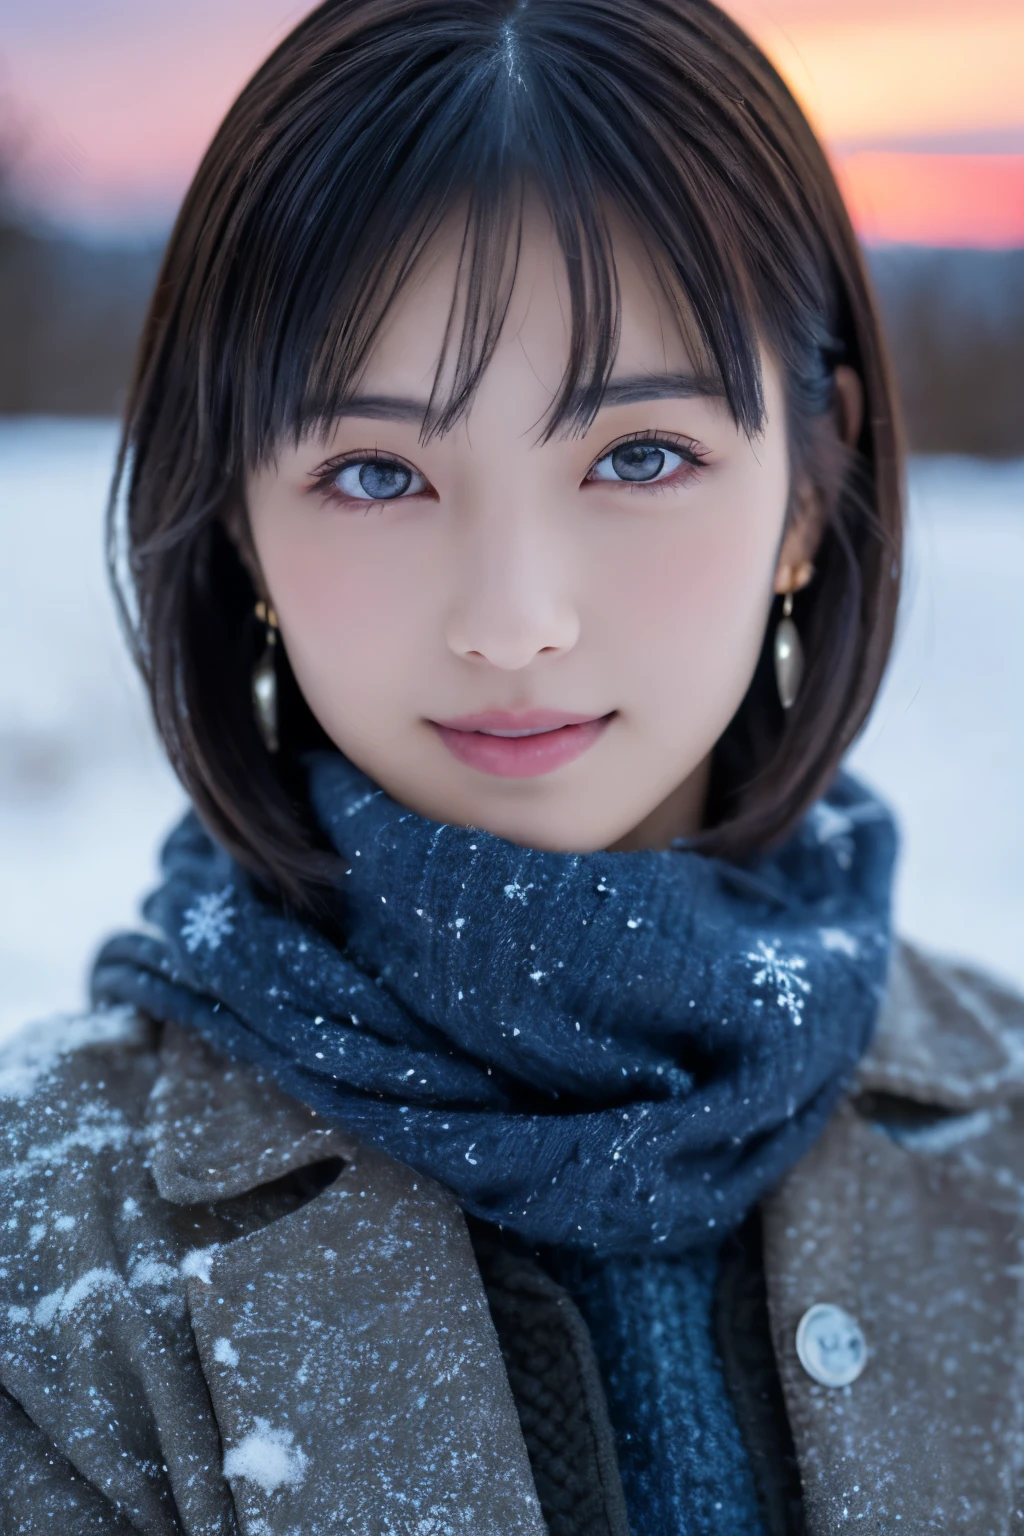 1 名女孩, (冬天的衣服:1.2), 美丽的日本女演员, 
上镜, 雪姬, 长长的睫毛, 雪花耳环,
(RAW 照片, 最好的质量), (现实, 真实感:1.4), (片飞), 
美丽细致的眼睛, 美丽细致的嘴唇, 非常详细的眼睛和脸部, 
BREAK 是
 (拉普兰冬季冰冻的雪场), (黄昏天空的最后一丝痕迹:1.4), 
空灵之美, 积雪覆盖的树, 粉状雪, 
黄昏的雪原景观, 
靛蓝和深朱红色配色方案, 戏剧写作, 很棒的氛围, 
BREAK 是 
Perfect Anatomy, 全身纤细, 小乳房, (短发:1.3), 天使&#39;微笑, 
水晶般的肌肤, 使眼睛清晰, 捕捉光线